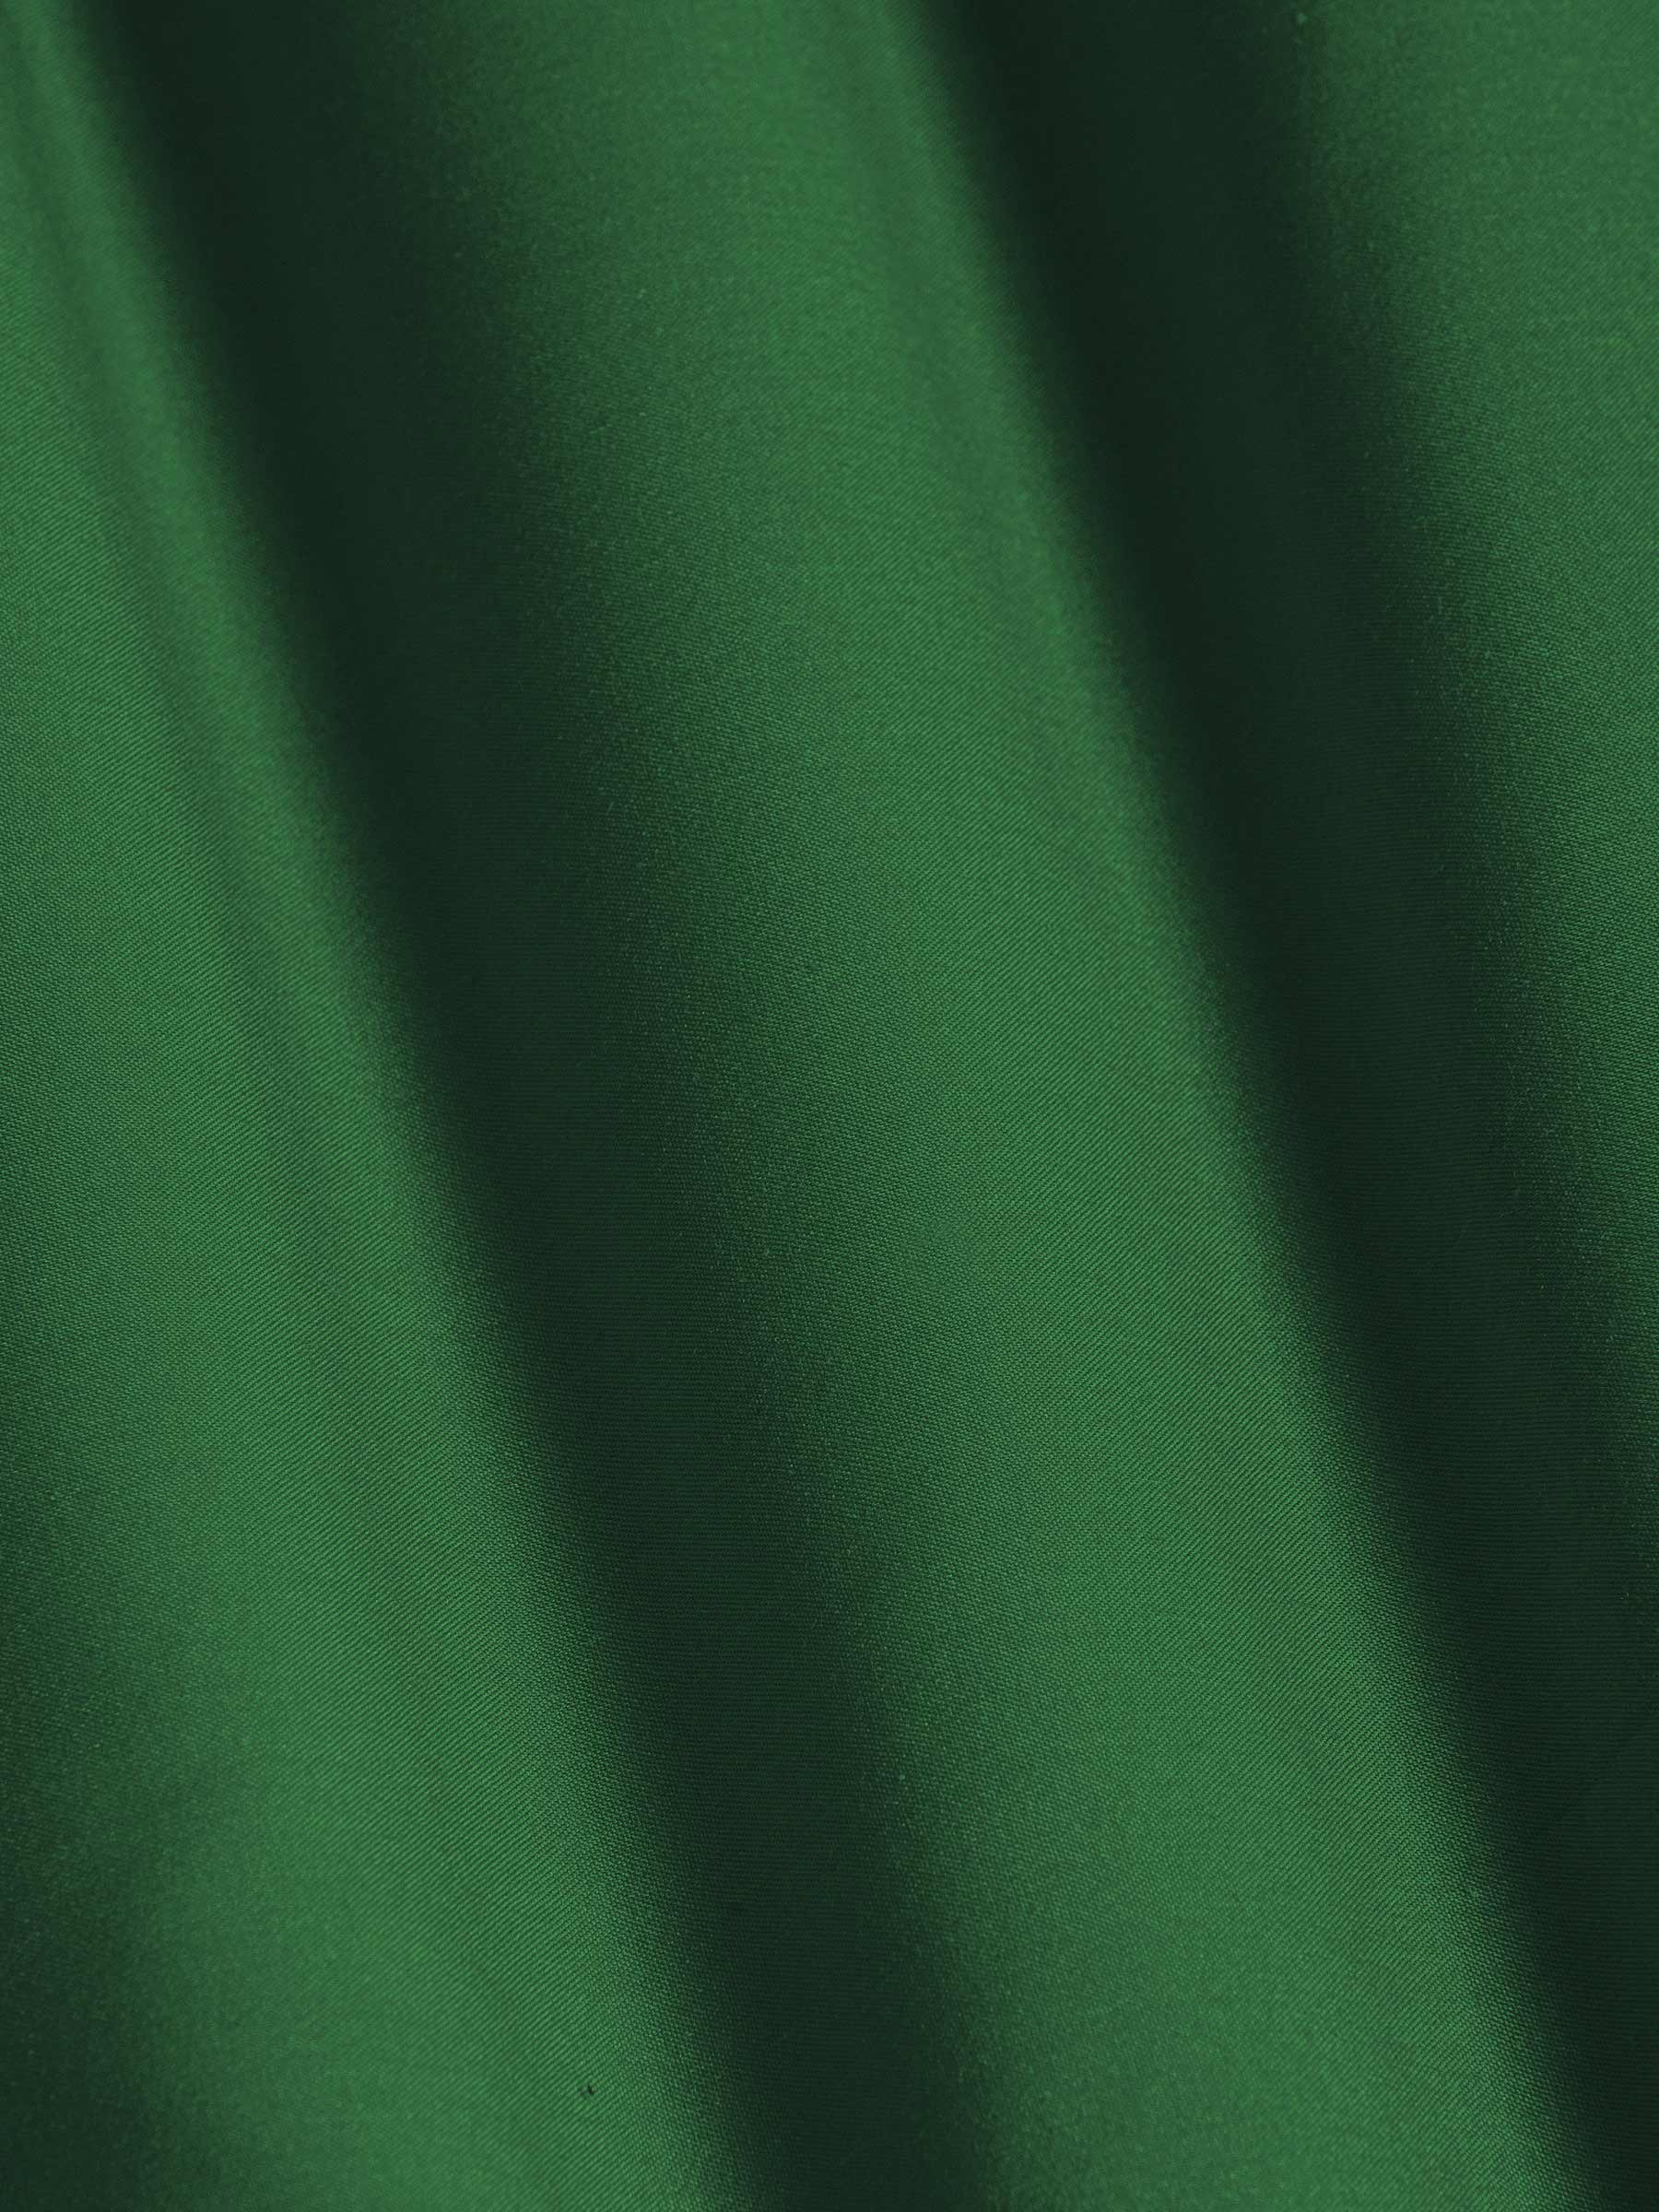 Leira Solid Green Overhemd Lange Mouw